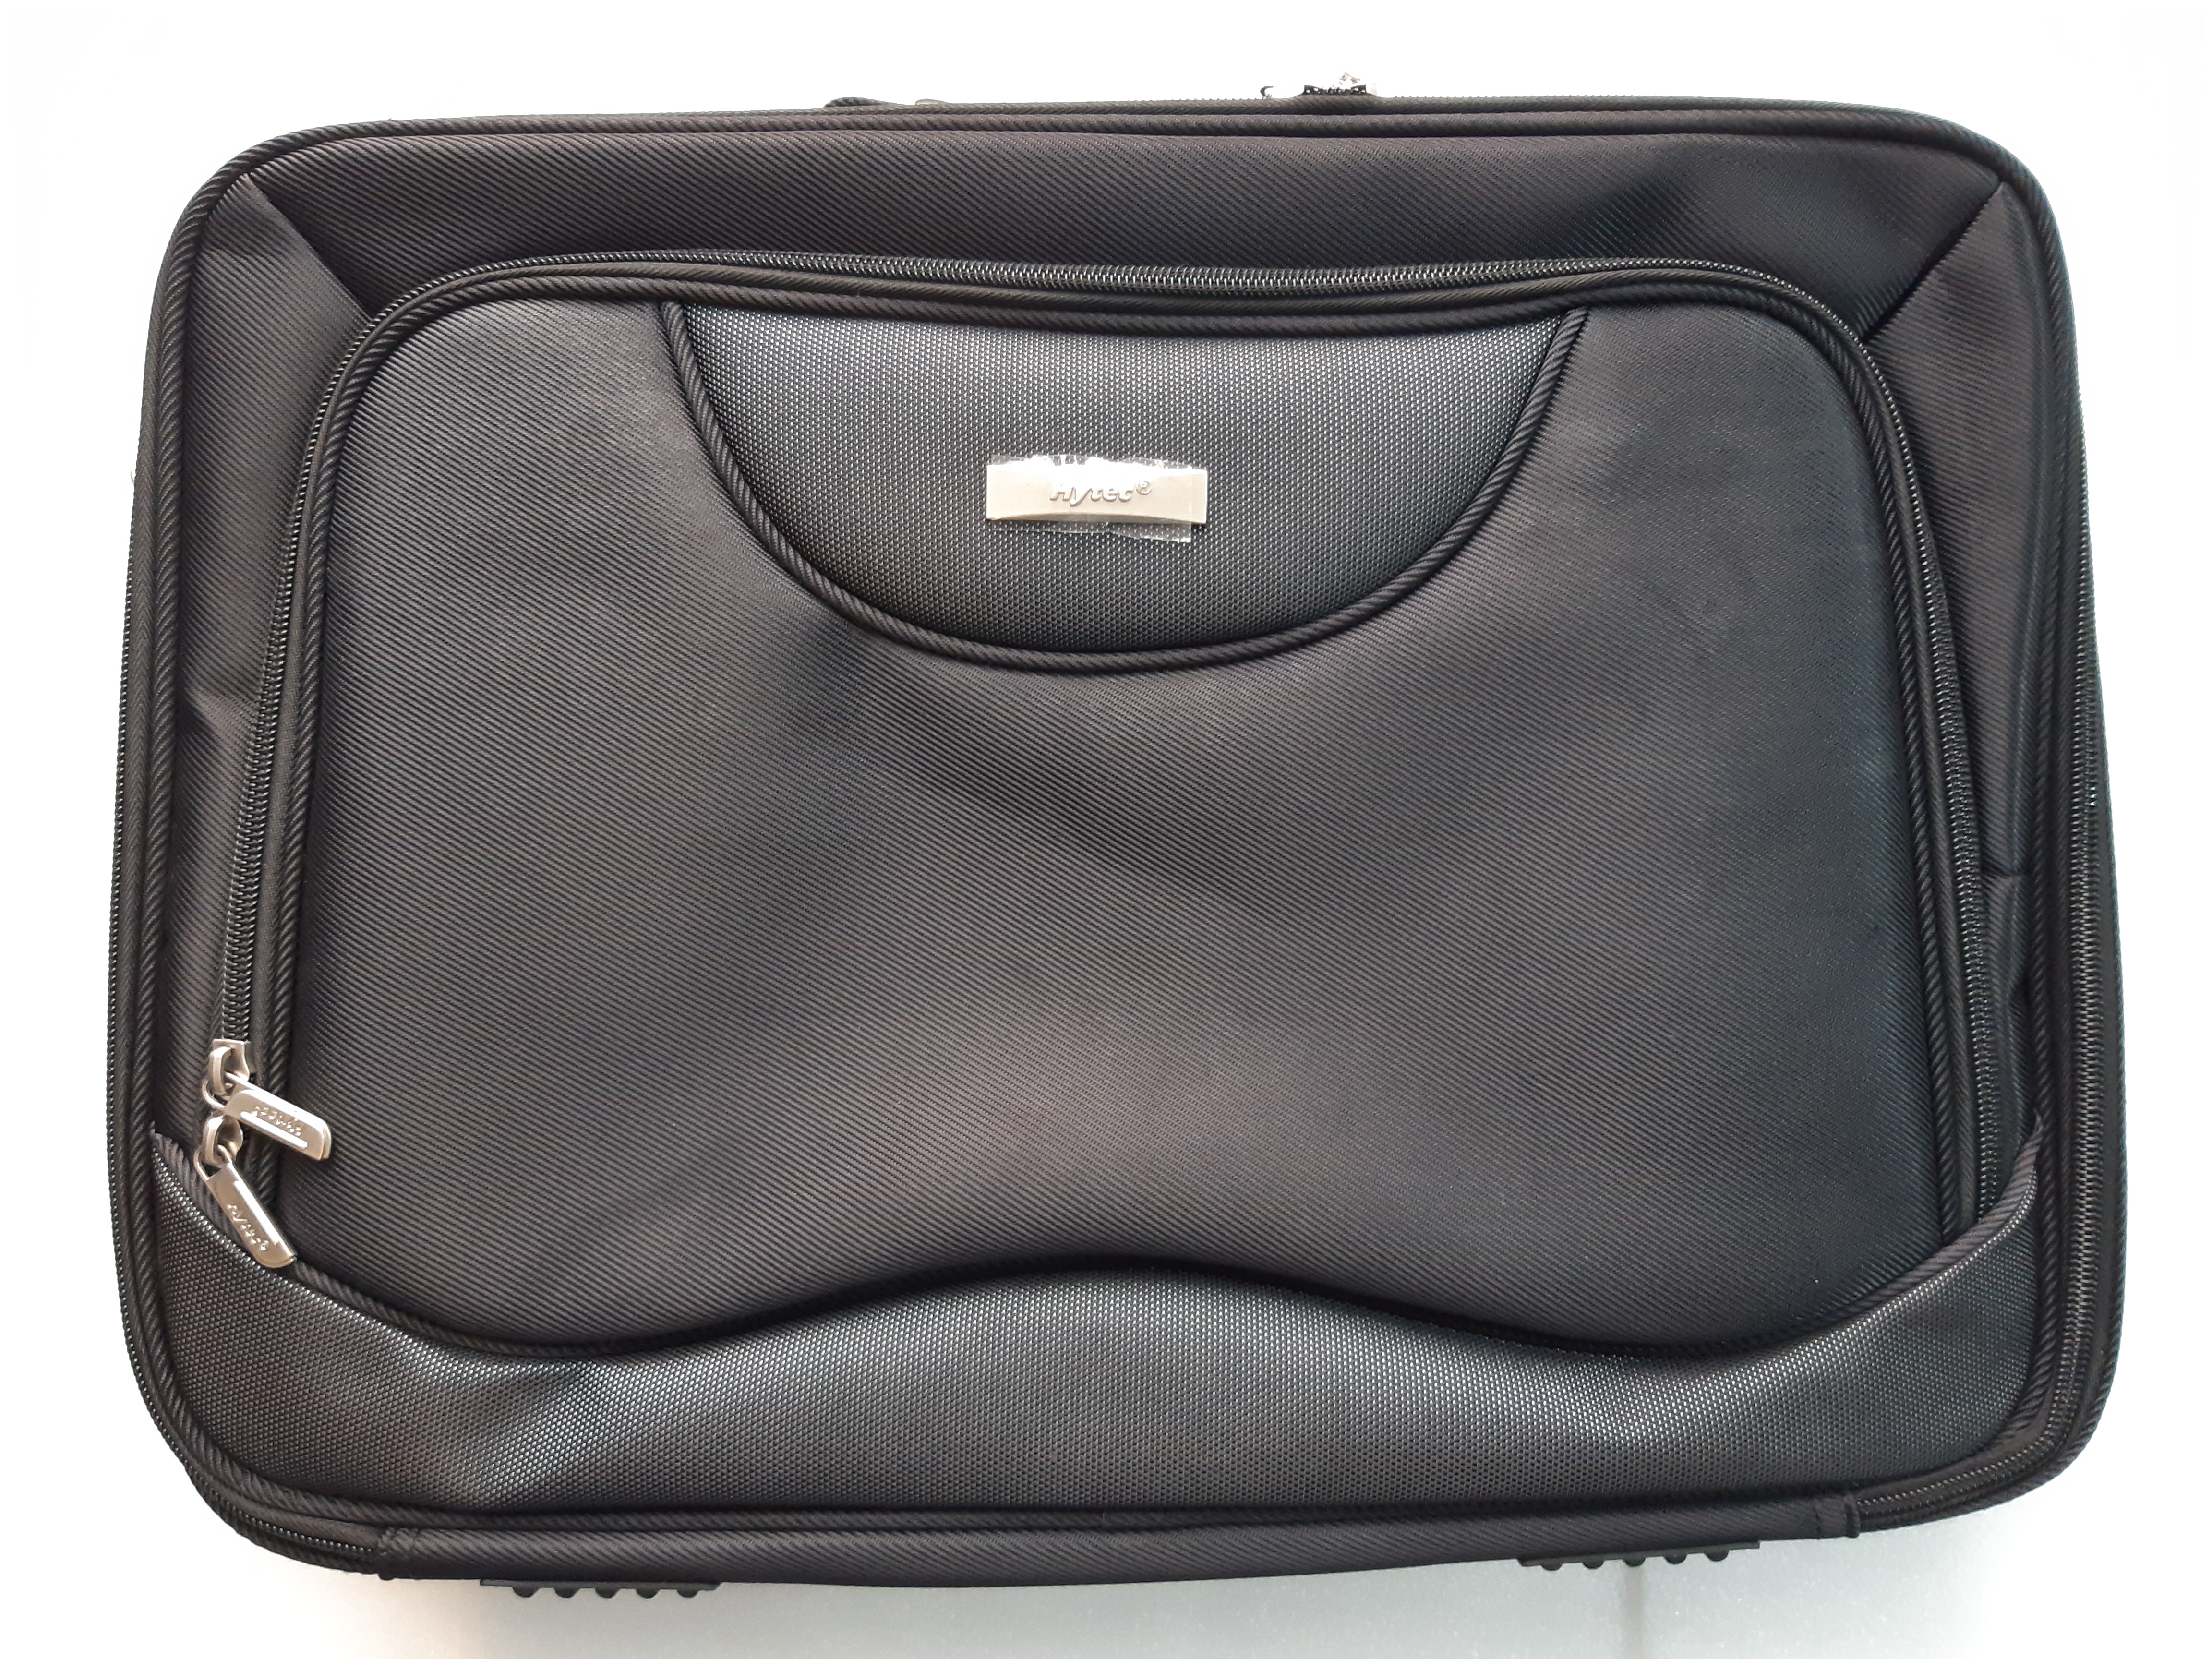  18" Hytec Laptop Briefcase Bag  